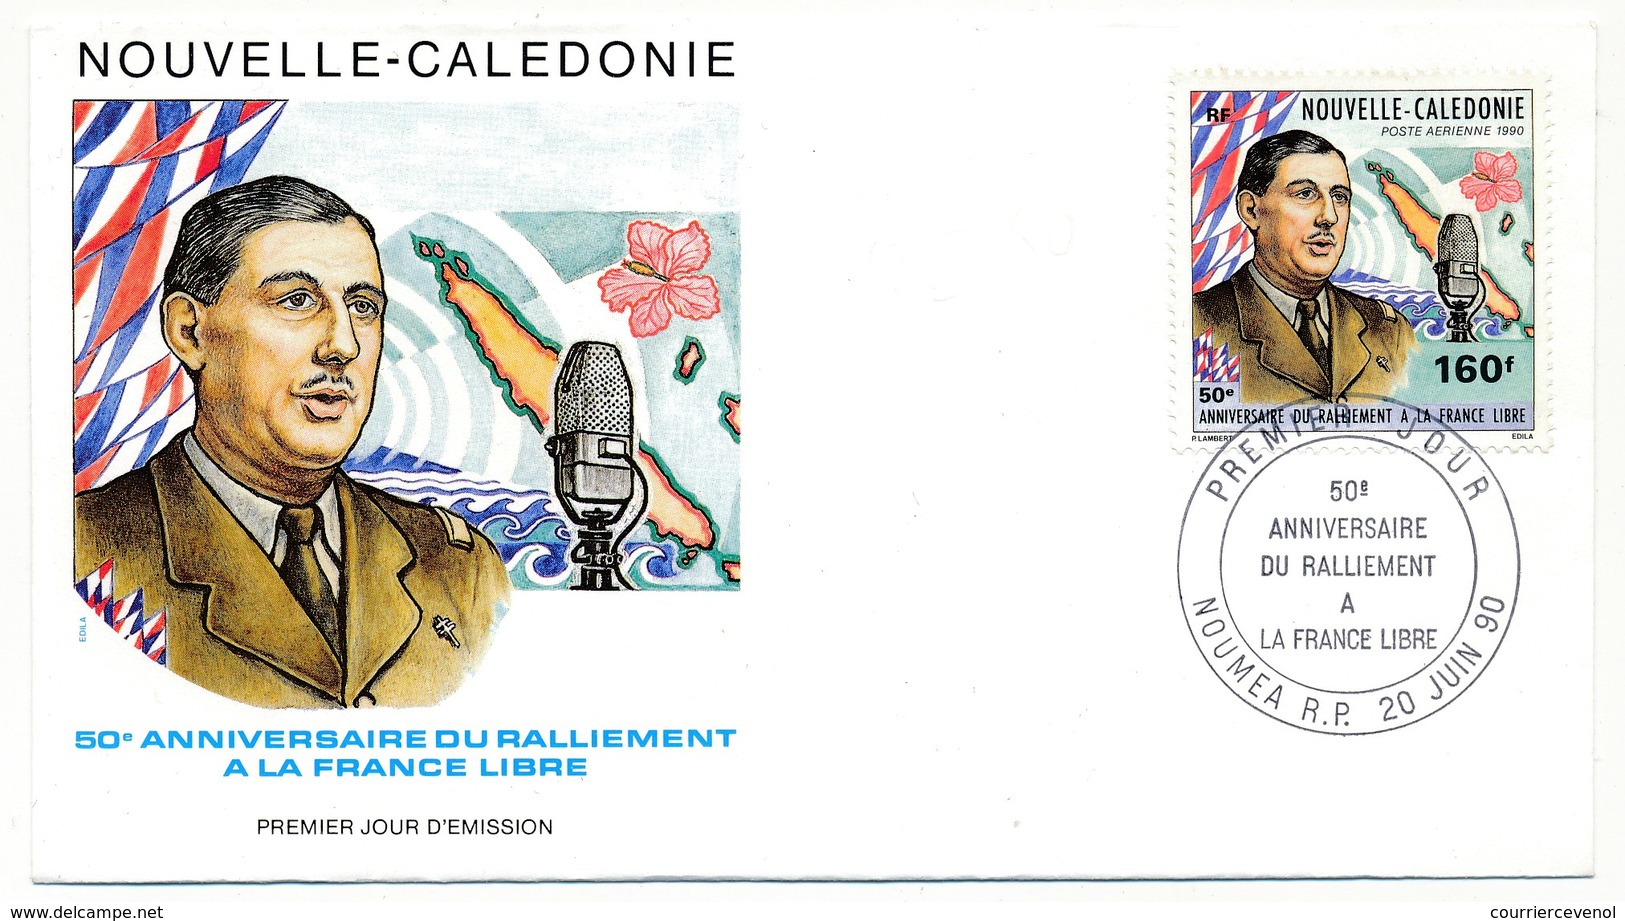 NOUVELLE CALEDONIE -  Enveloppe FDC - 50eme Anniversaire Du Ralliement à La France Libre - NOUMEA 20/06/1990 - De Gaulle (Général)